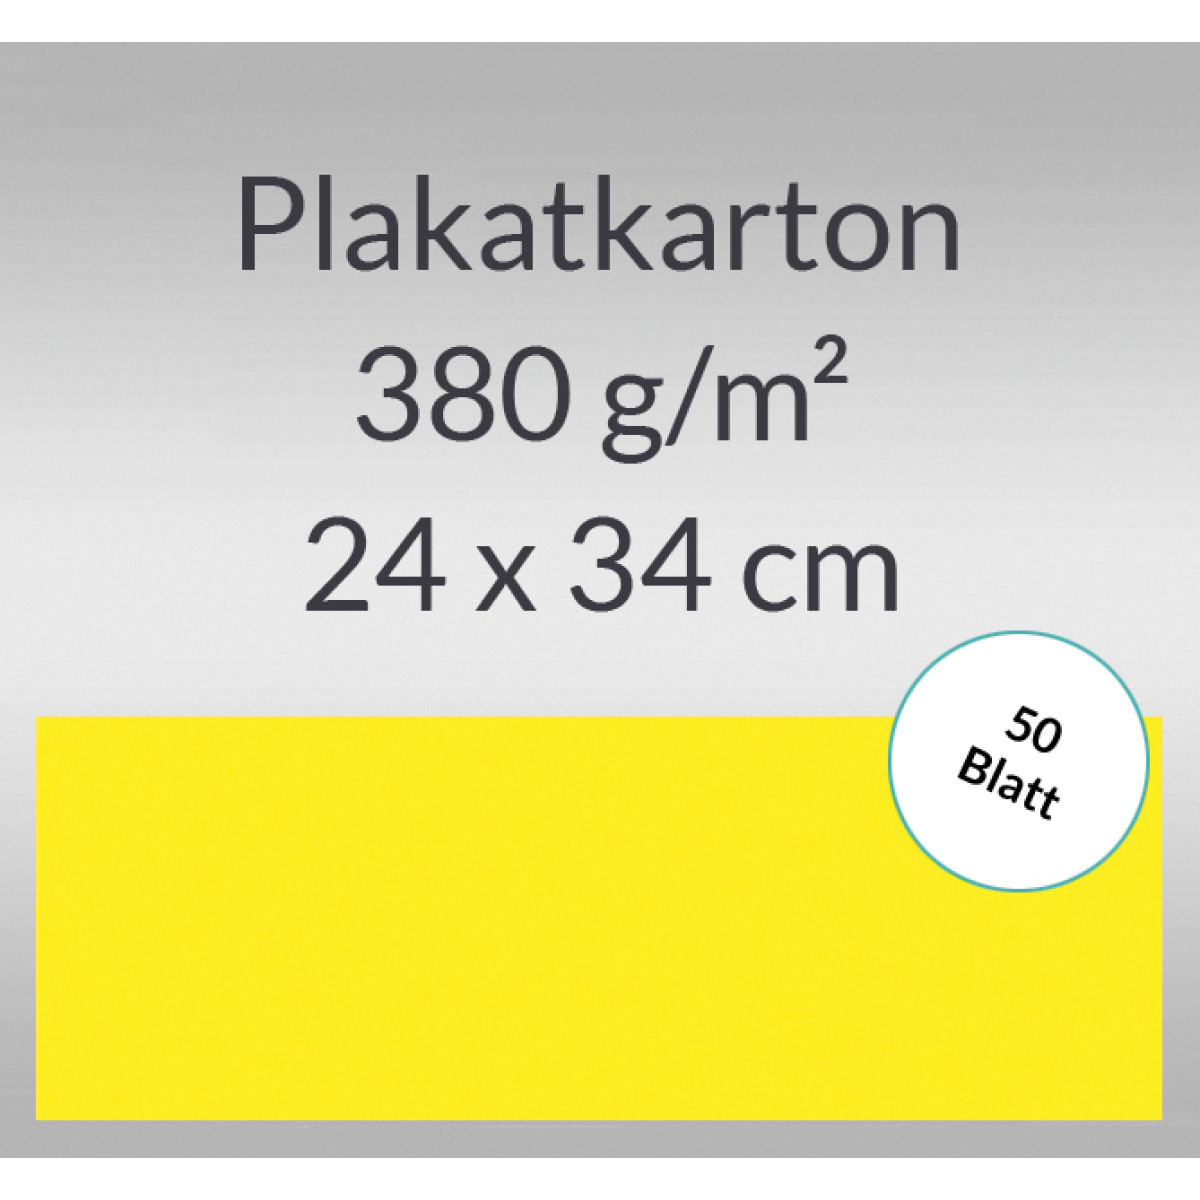 Plakatkarton 380 g/qm 24 x 34 cm citronengelb - 50 Blatt